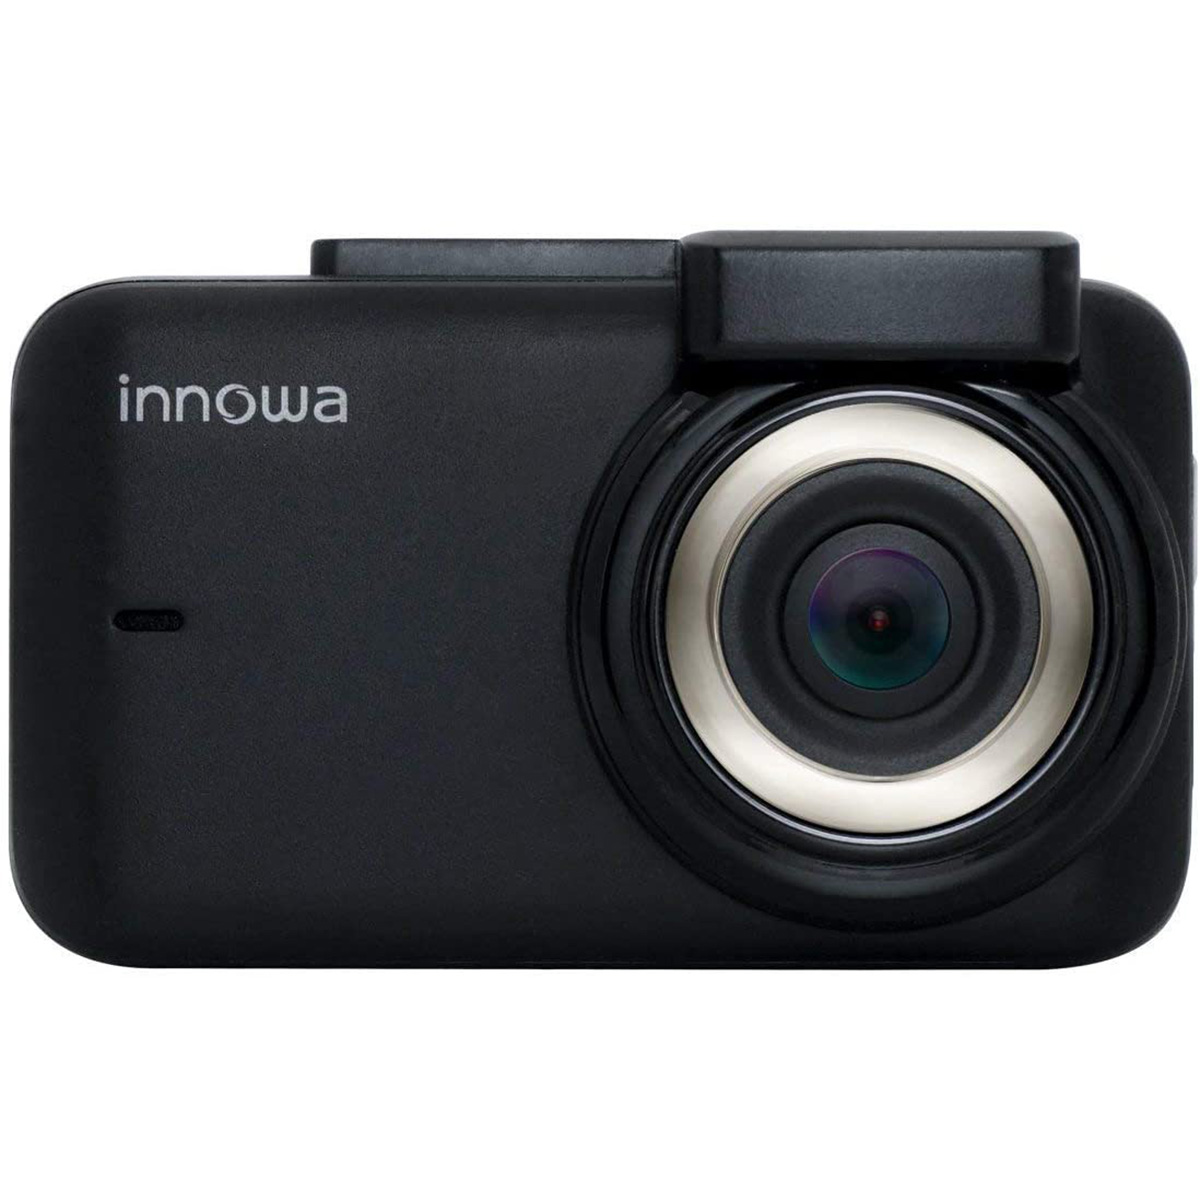 innowa [正規販売店] Journey ドライブレコーダー 売れ筋 フロントカメラモデル JN001